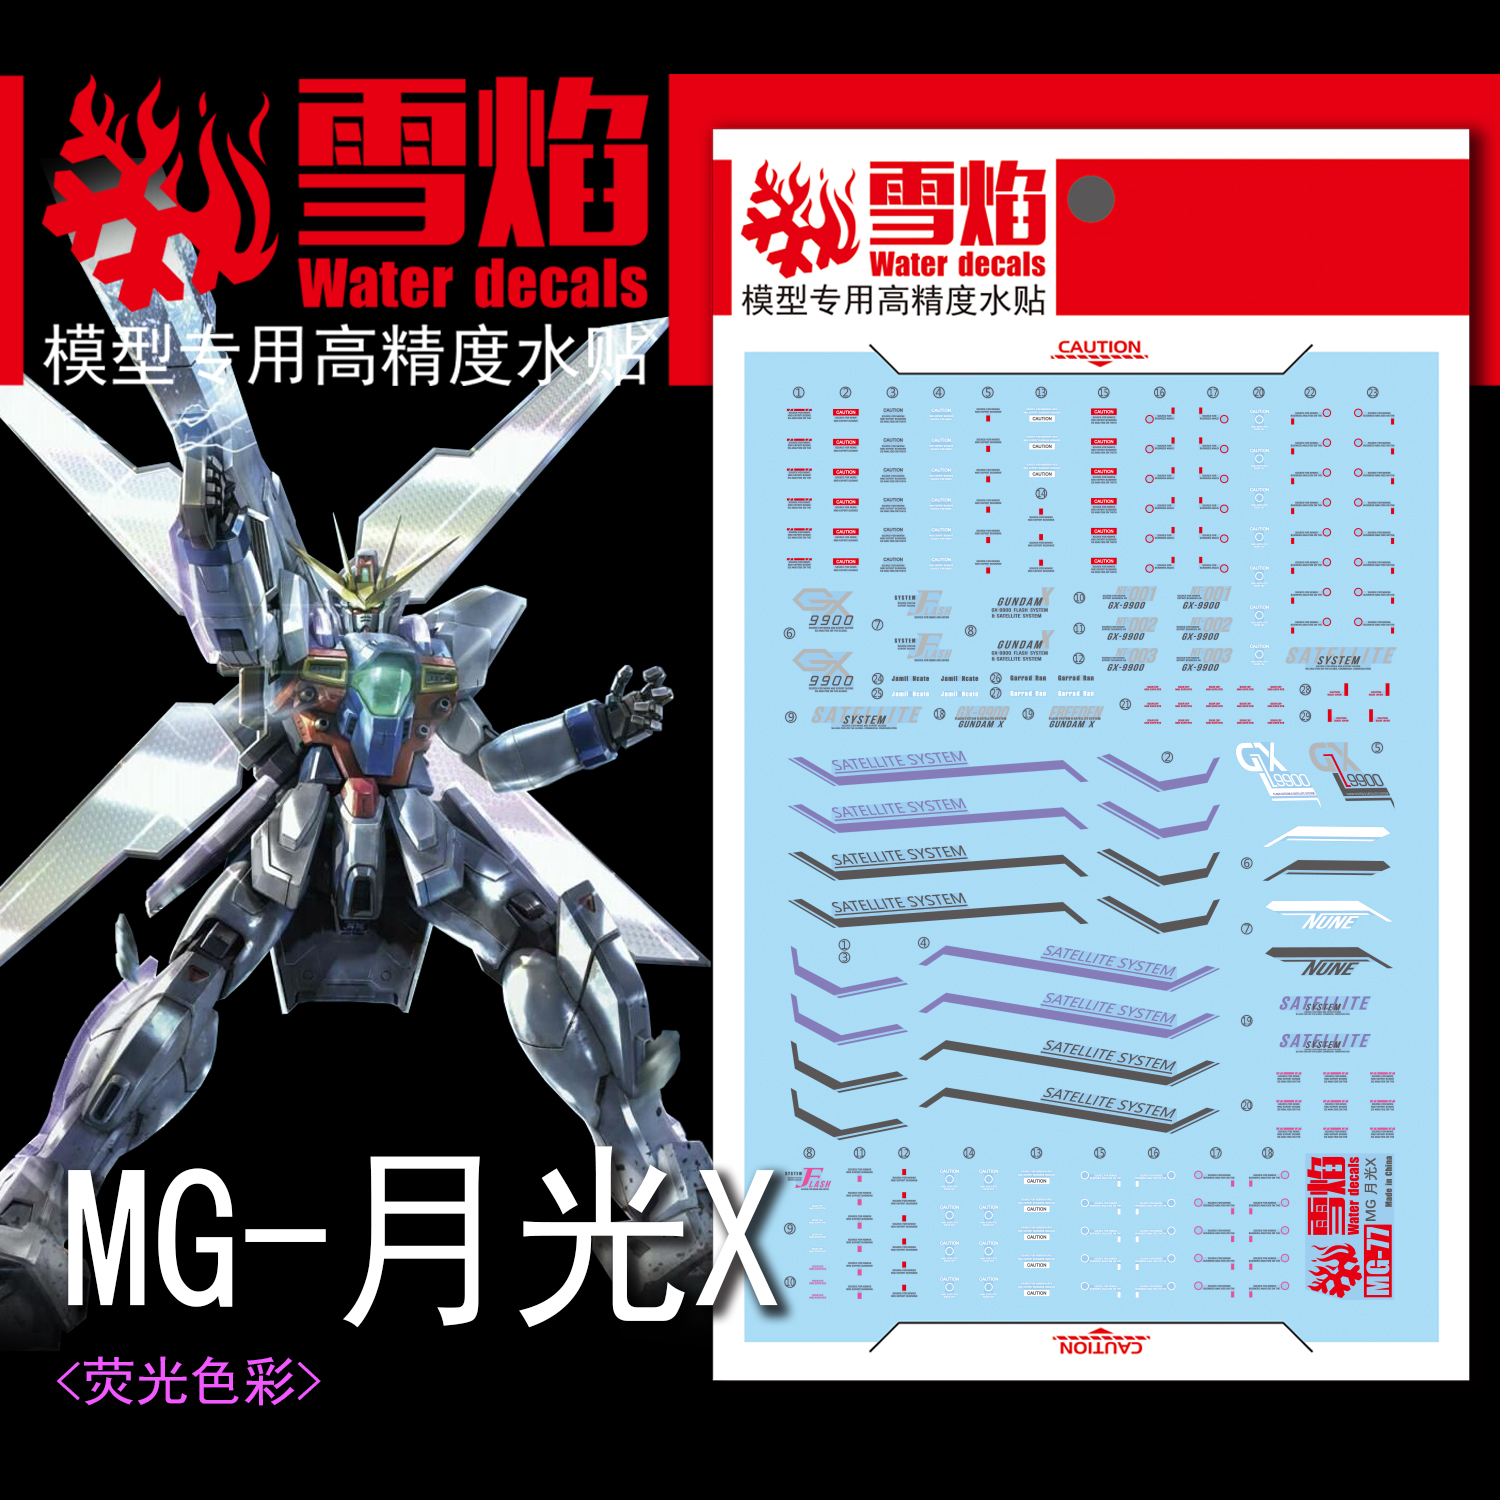 雪焰工作室 MG-77 月光X 荧光版 高精度 专用水贴